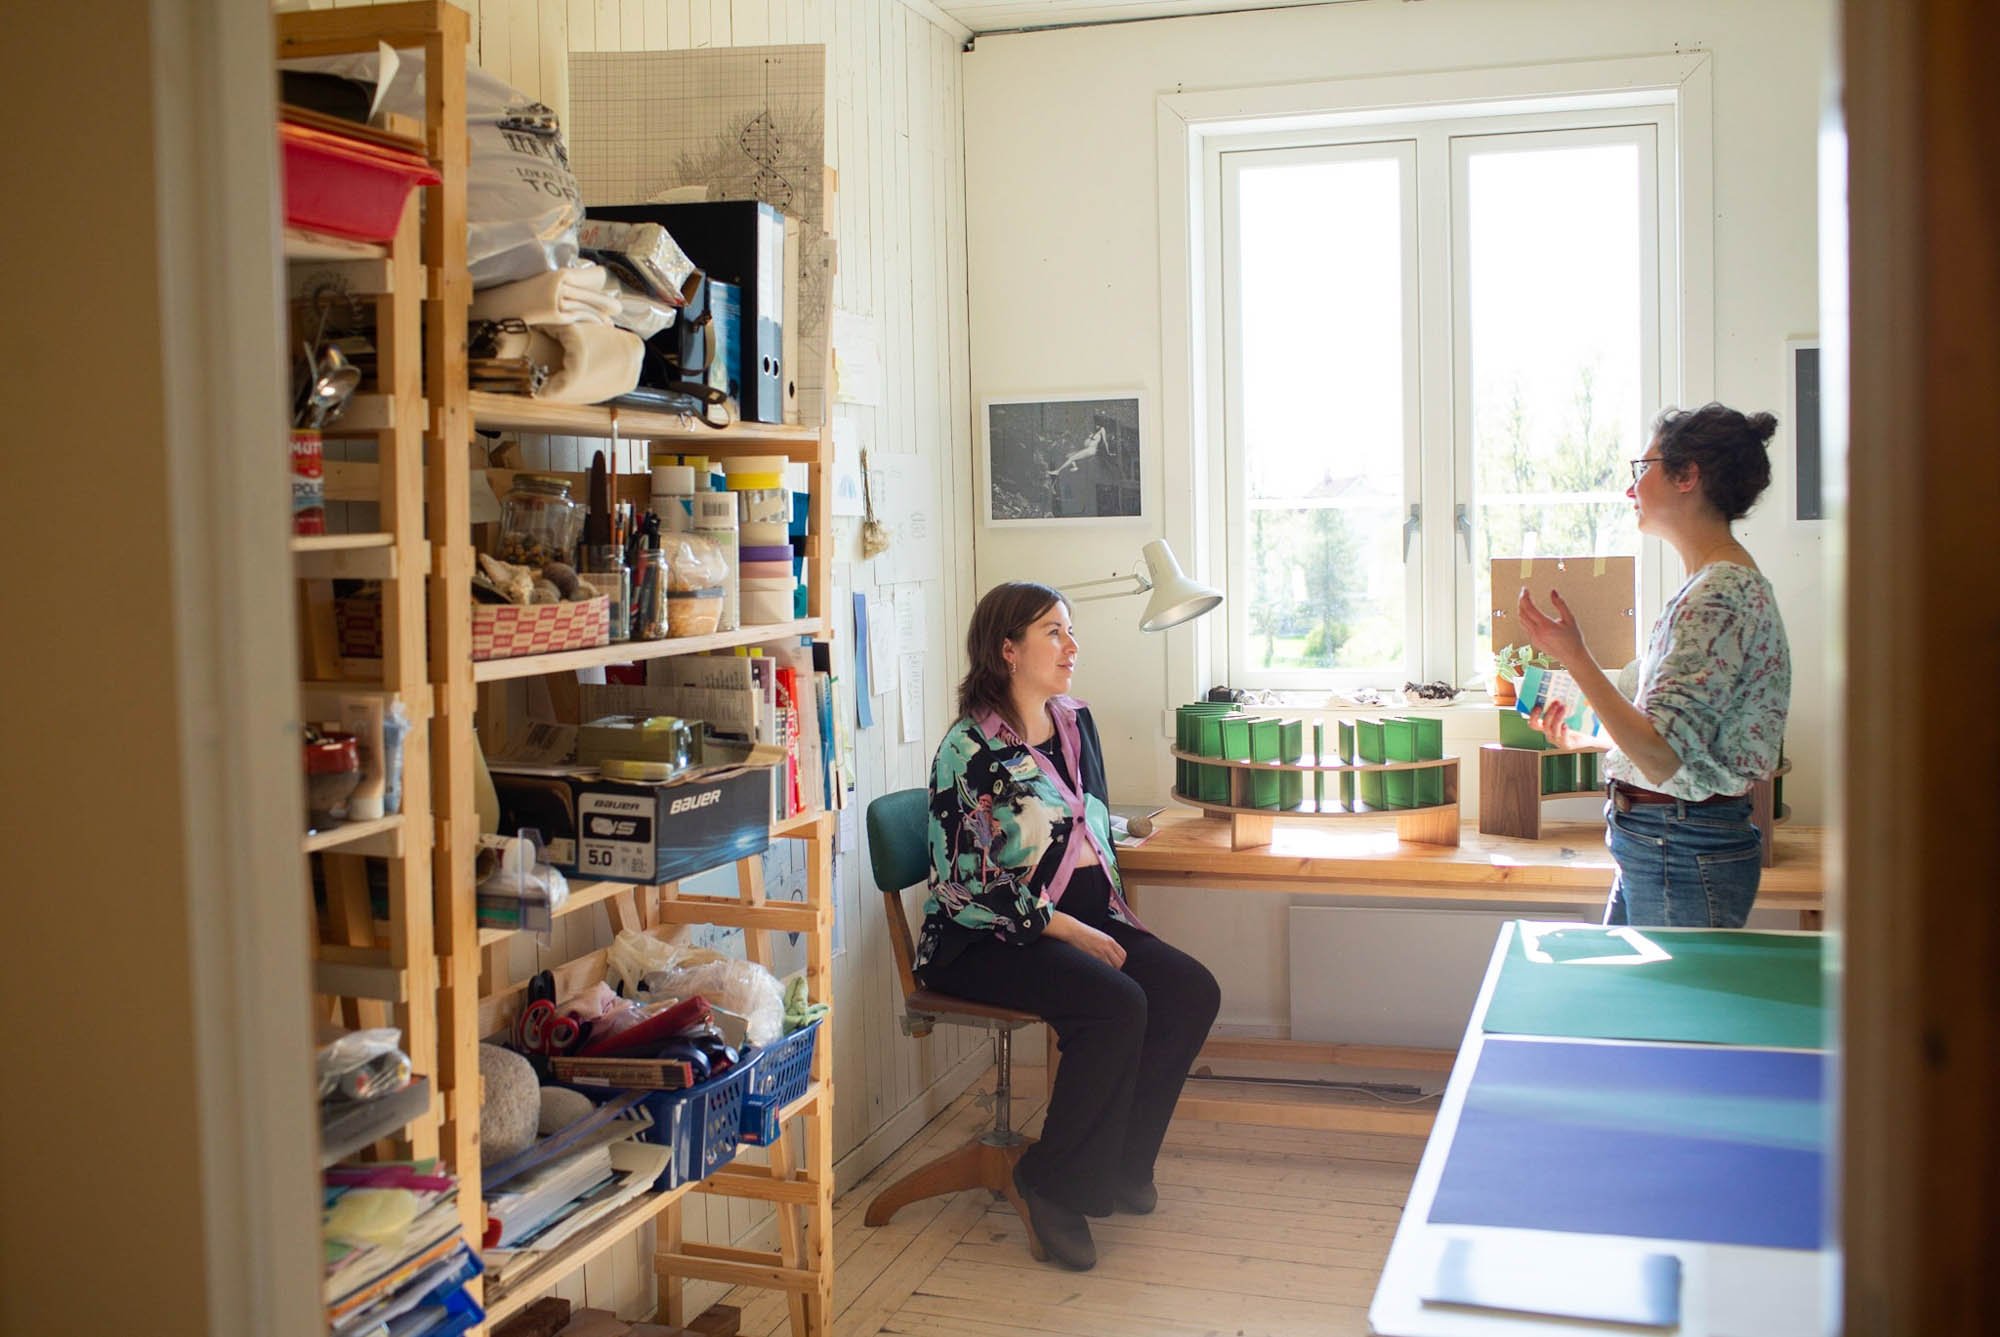   Anne Lindgaard Møller  (t.v.) med besøk på sitt atelier .  Foto: Daniela Toma.  